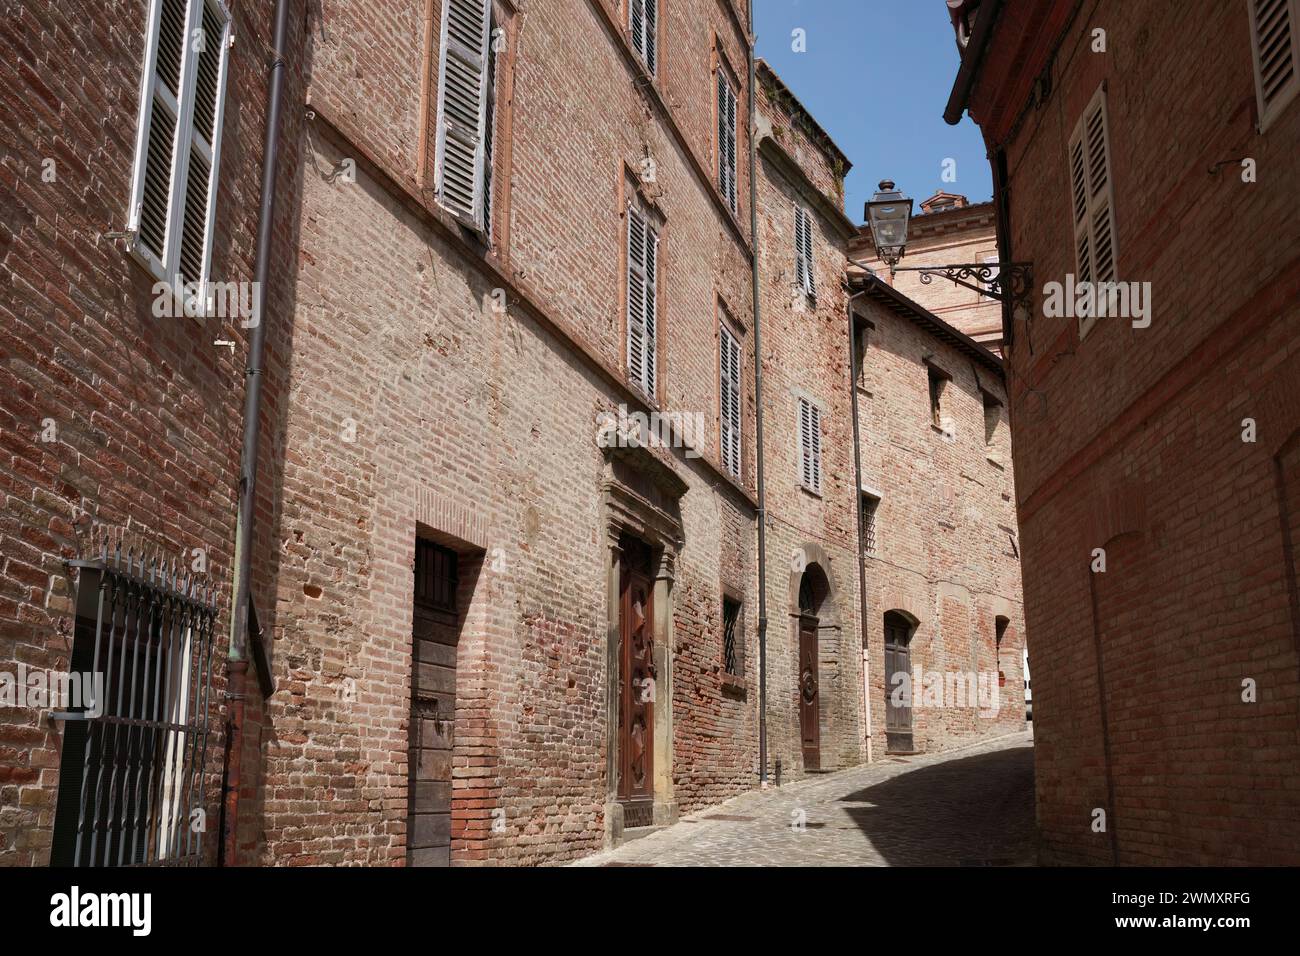 Amandola, historic town in Fermo province, Marche, Italy Stock Photo